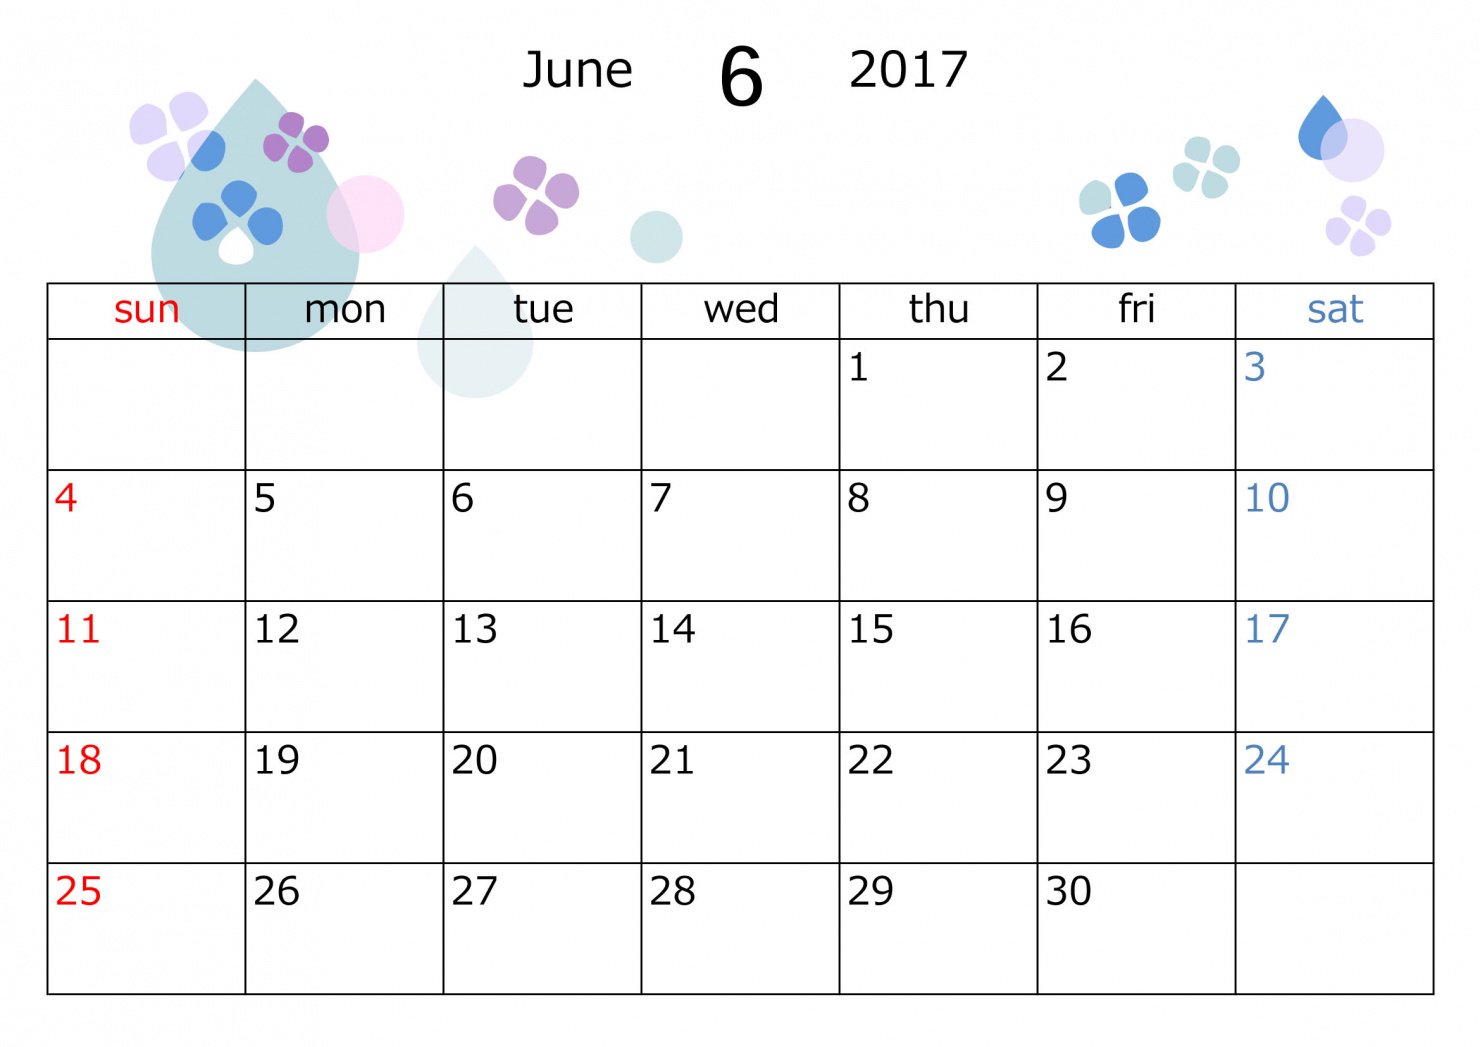 イラストボックス T Co I3w1jjfrgn 17年度のカレンダー素材です ａ4サイズで印刷できる横型のタイプを作りました イラストボックス 6月 6月カレンダー 17年6月カレンダー カレンダー素材 印刷 無料イラスト イラスト無料